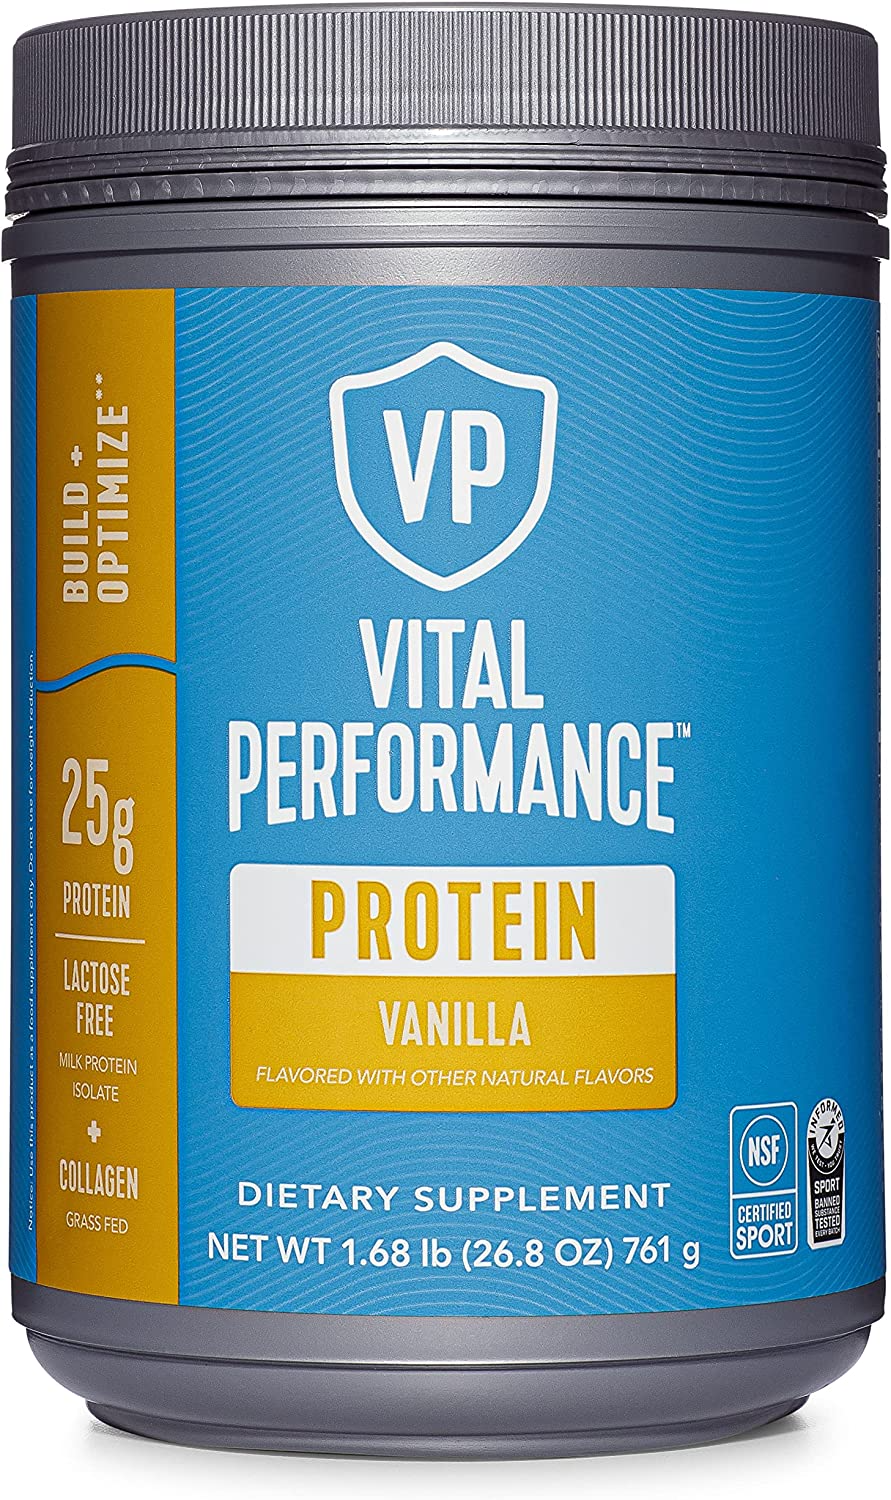 Vital Performance Collagen Protein Powder